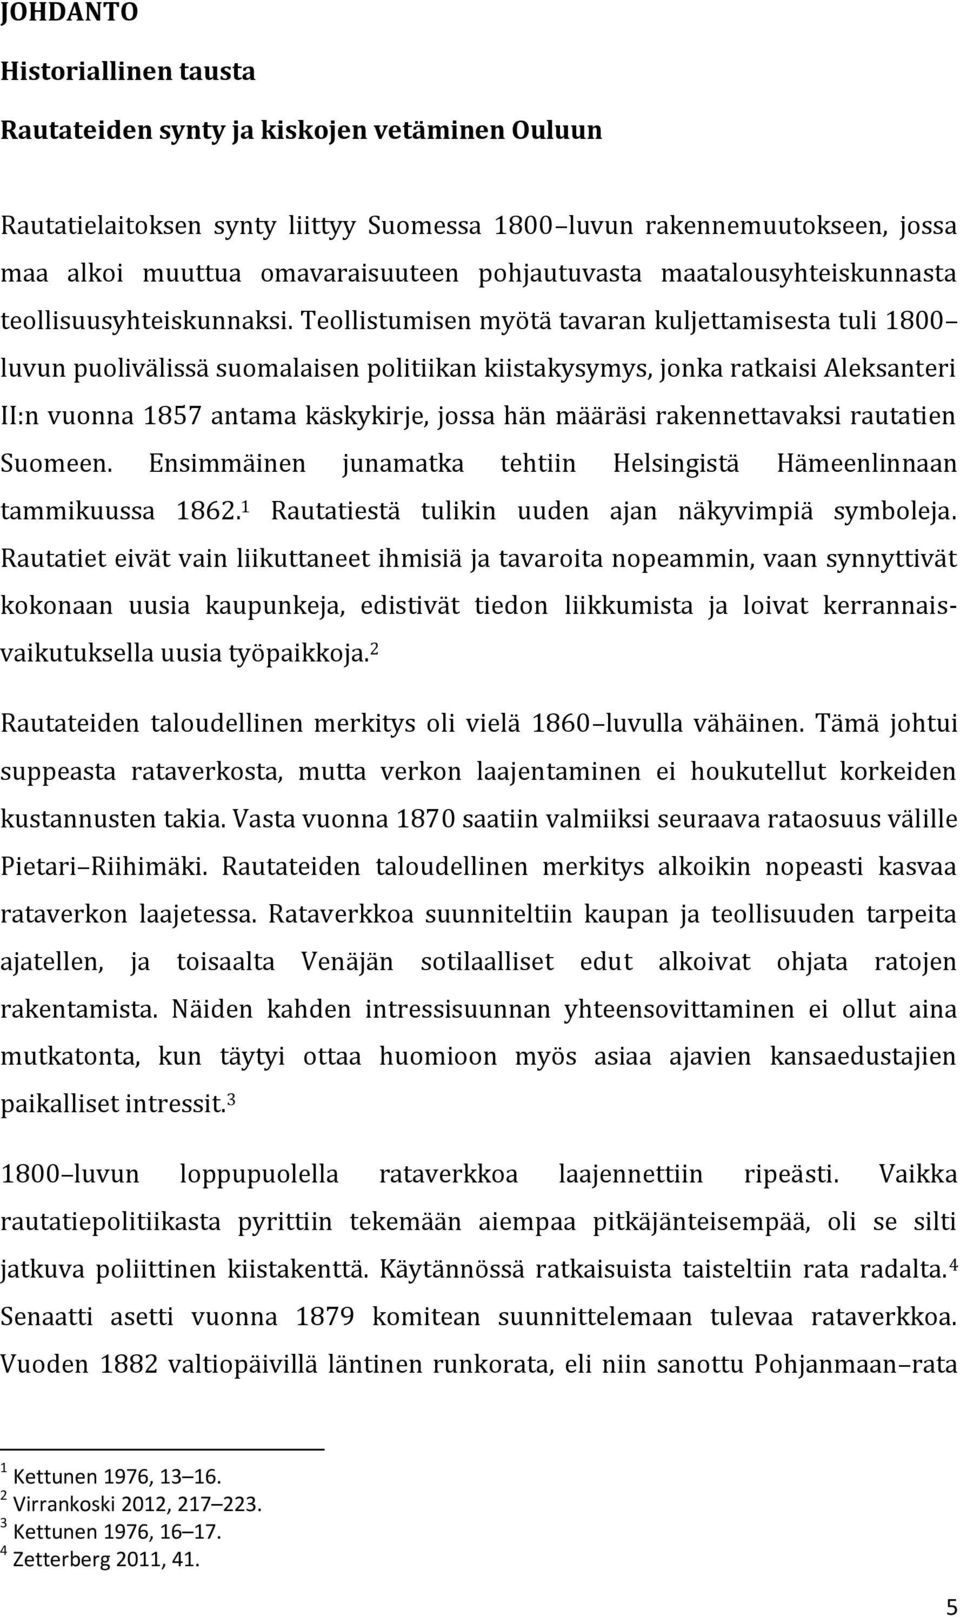 Teollistumisen myötä tavaran kuljettamisesta tuli 1800 luvun puolivälissä suomalaisen politiikan kiistakysymys, jonka ratkaisi Aleksanteri II:n vuonna 1857 antama käskykirje, jossa hän määräsi